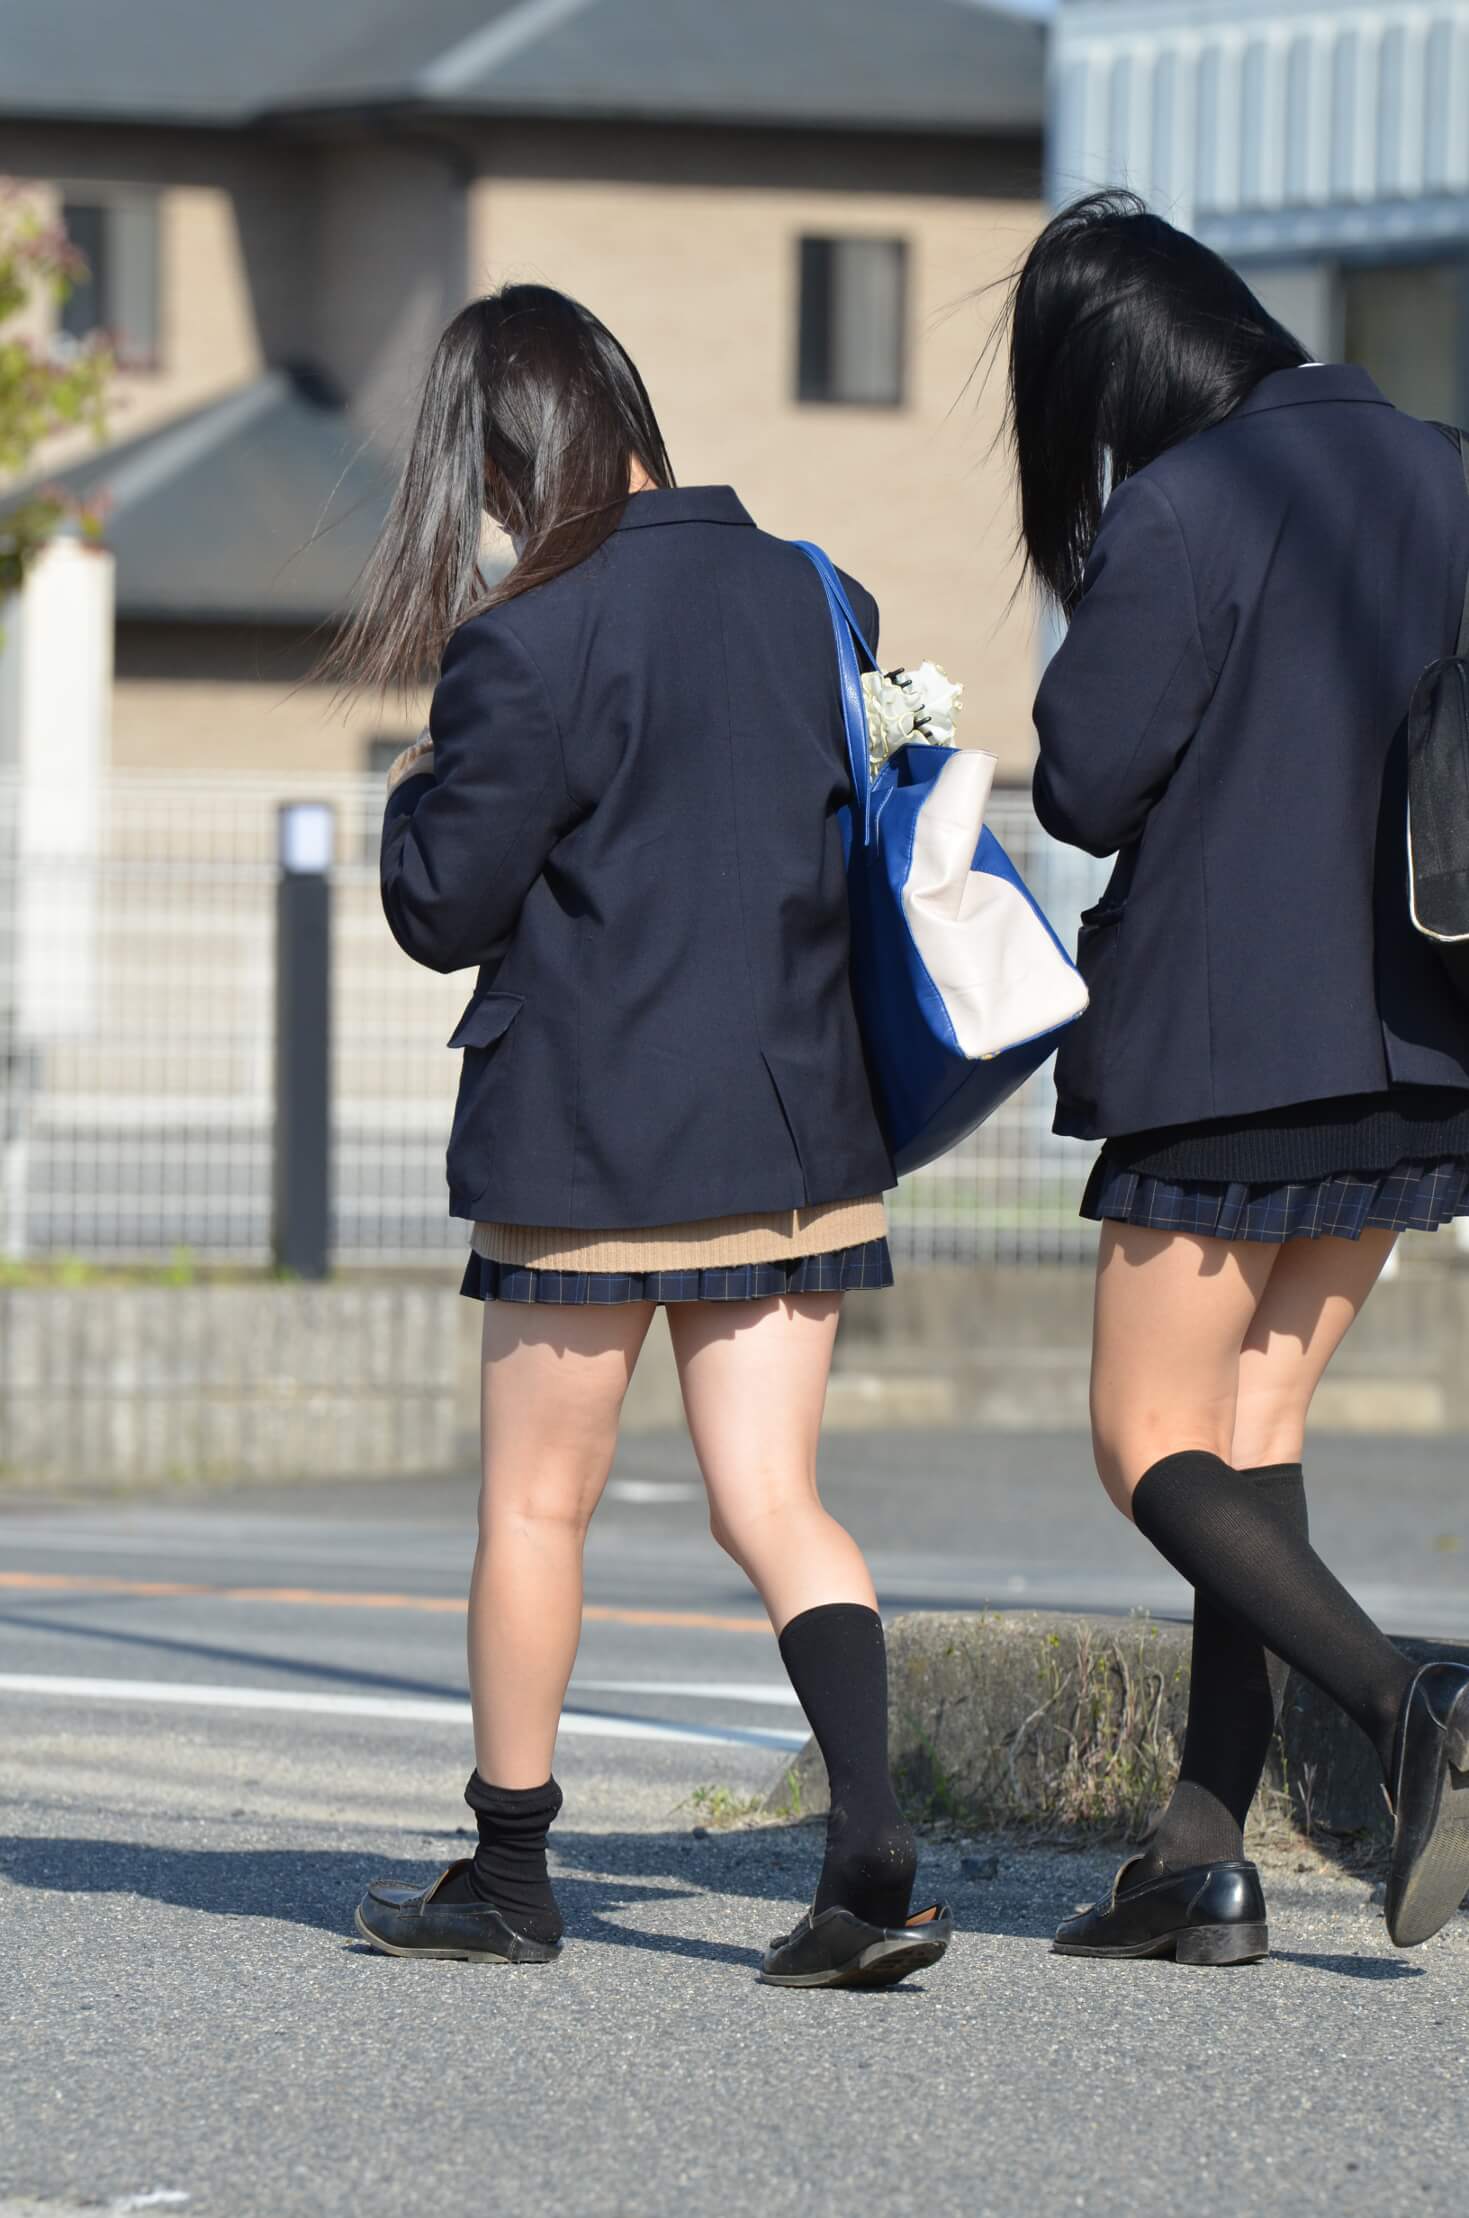 【画像】シンプルな女子高生の街撮り写真